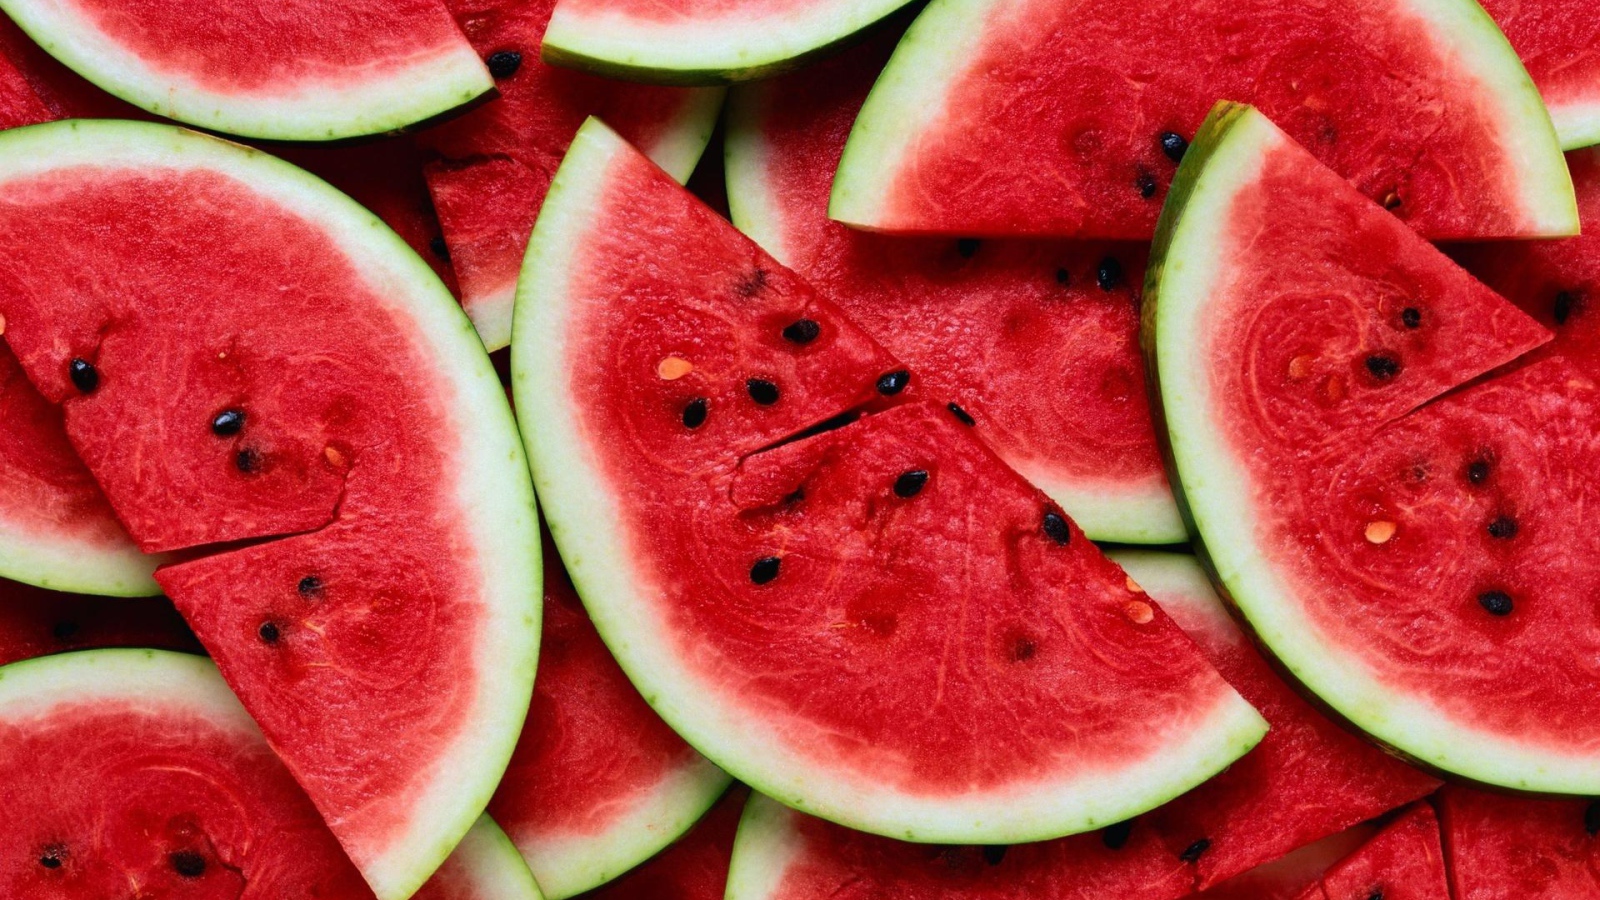 The cut ​​watermelon